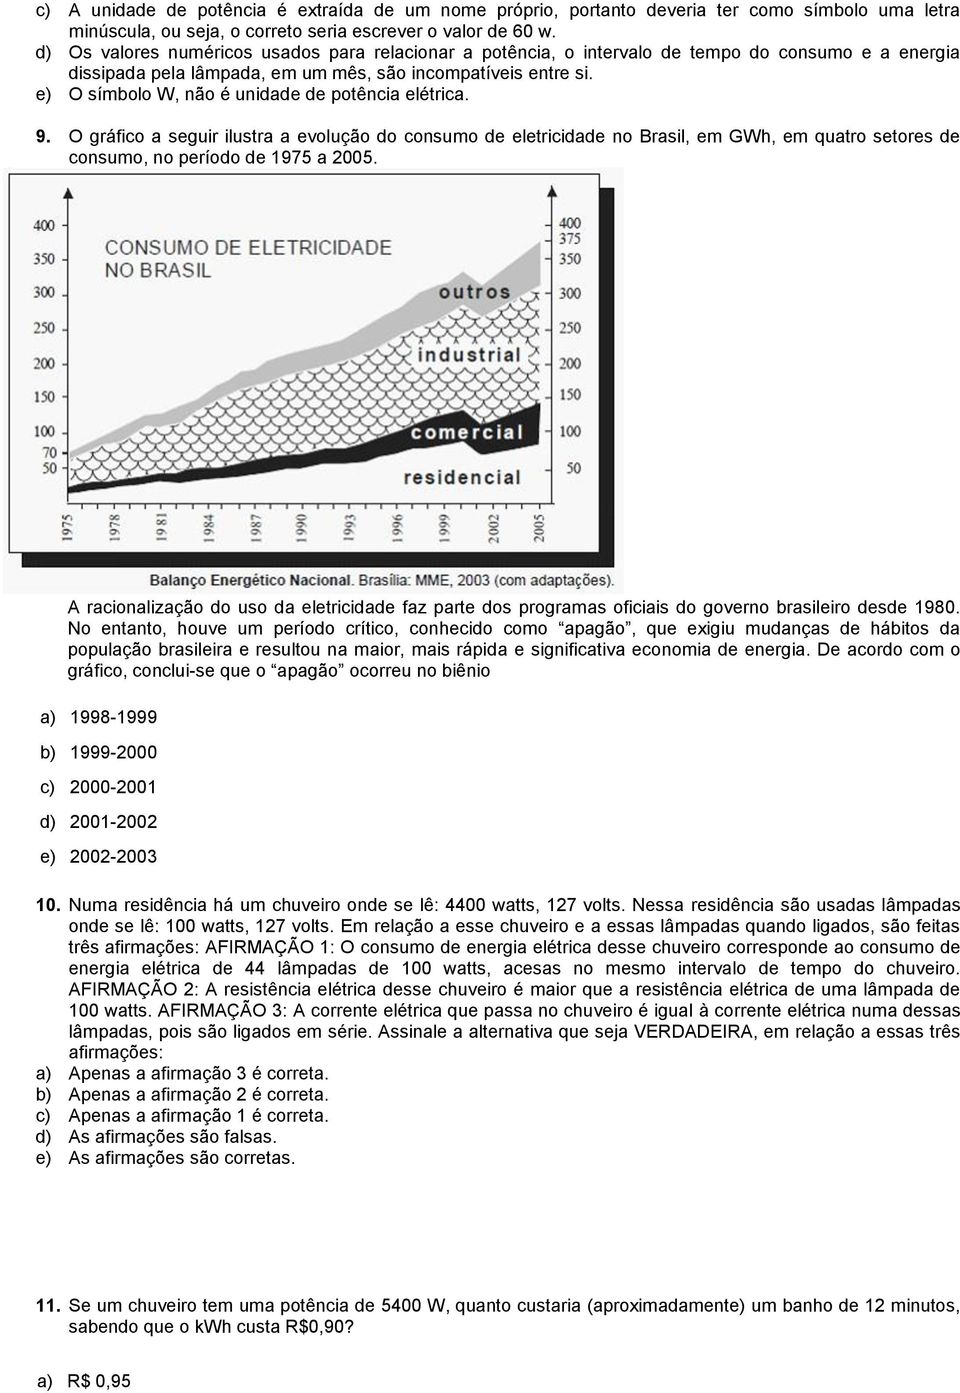 e) O símbolo W, não é unidade de potência elétrica. 9. O gráfico a seguir ilustra a evolução do consumo de eletricidade no Brasil, em GWh, em quatro setores de consumo, no período de 1975 a 2005.